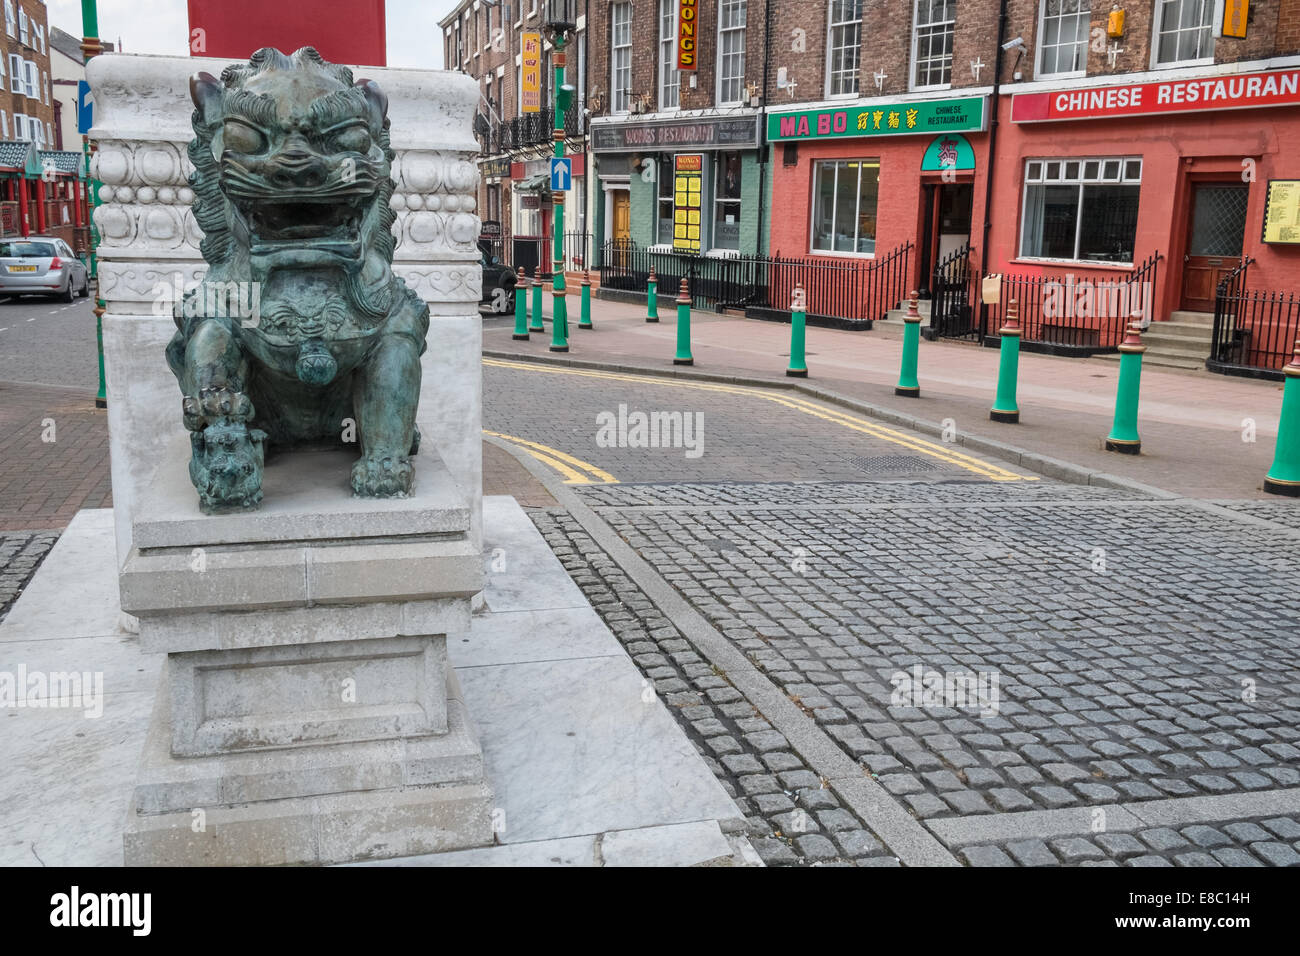 Estatua de dragón en Chinatown, Nelson Street, Liverpool, Merseyside, Inglaterra Foto de stock